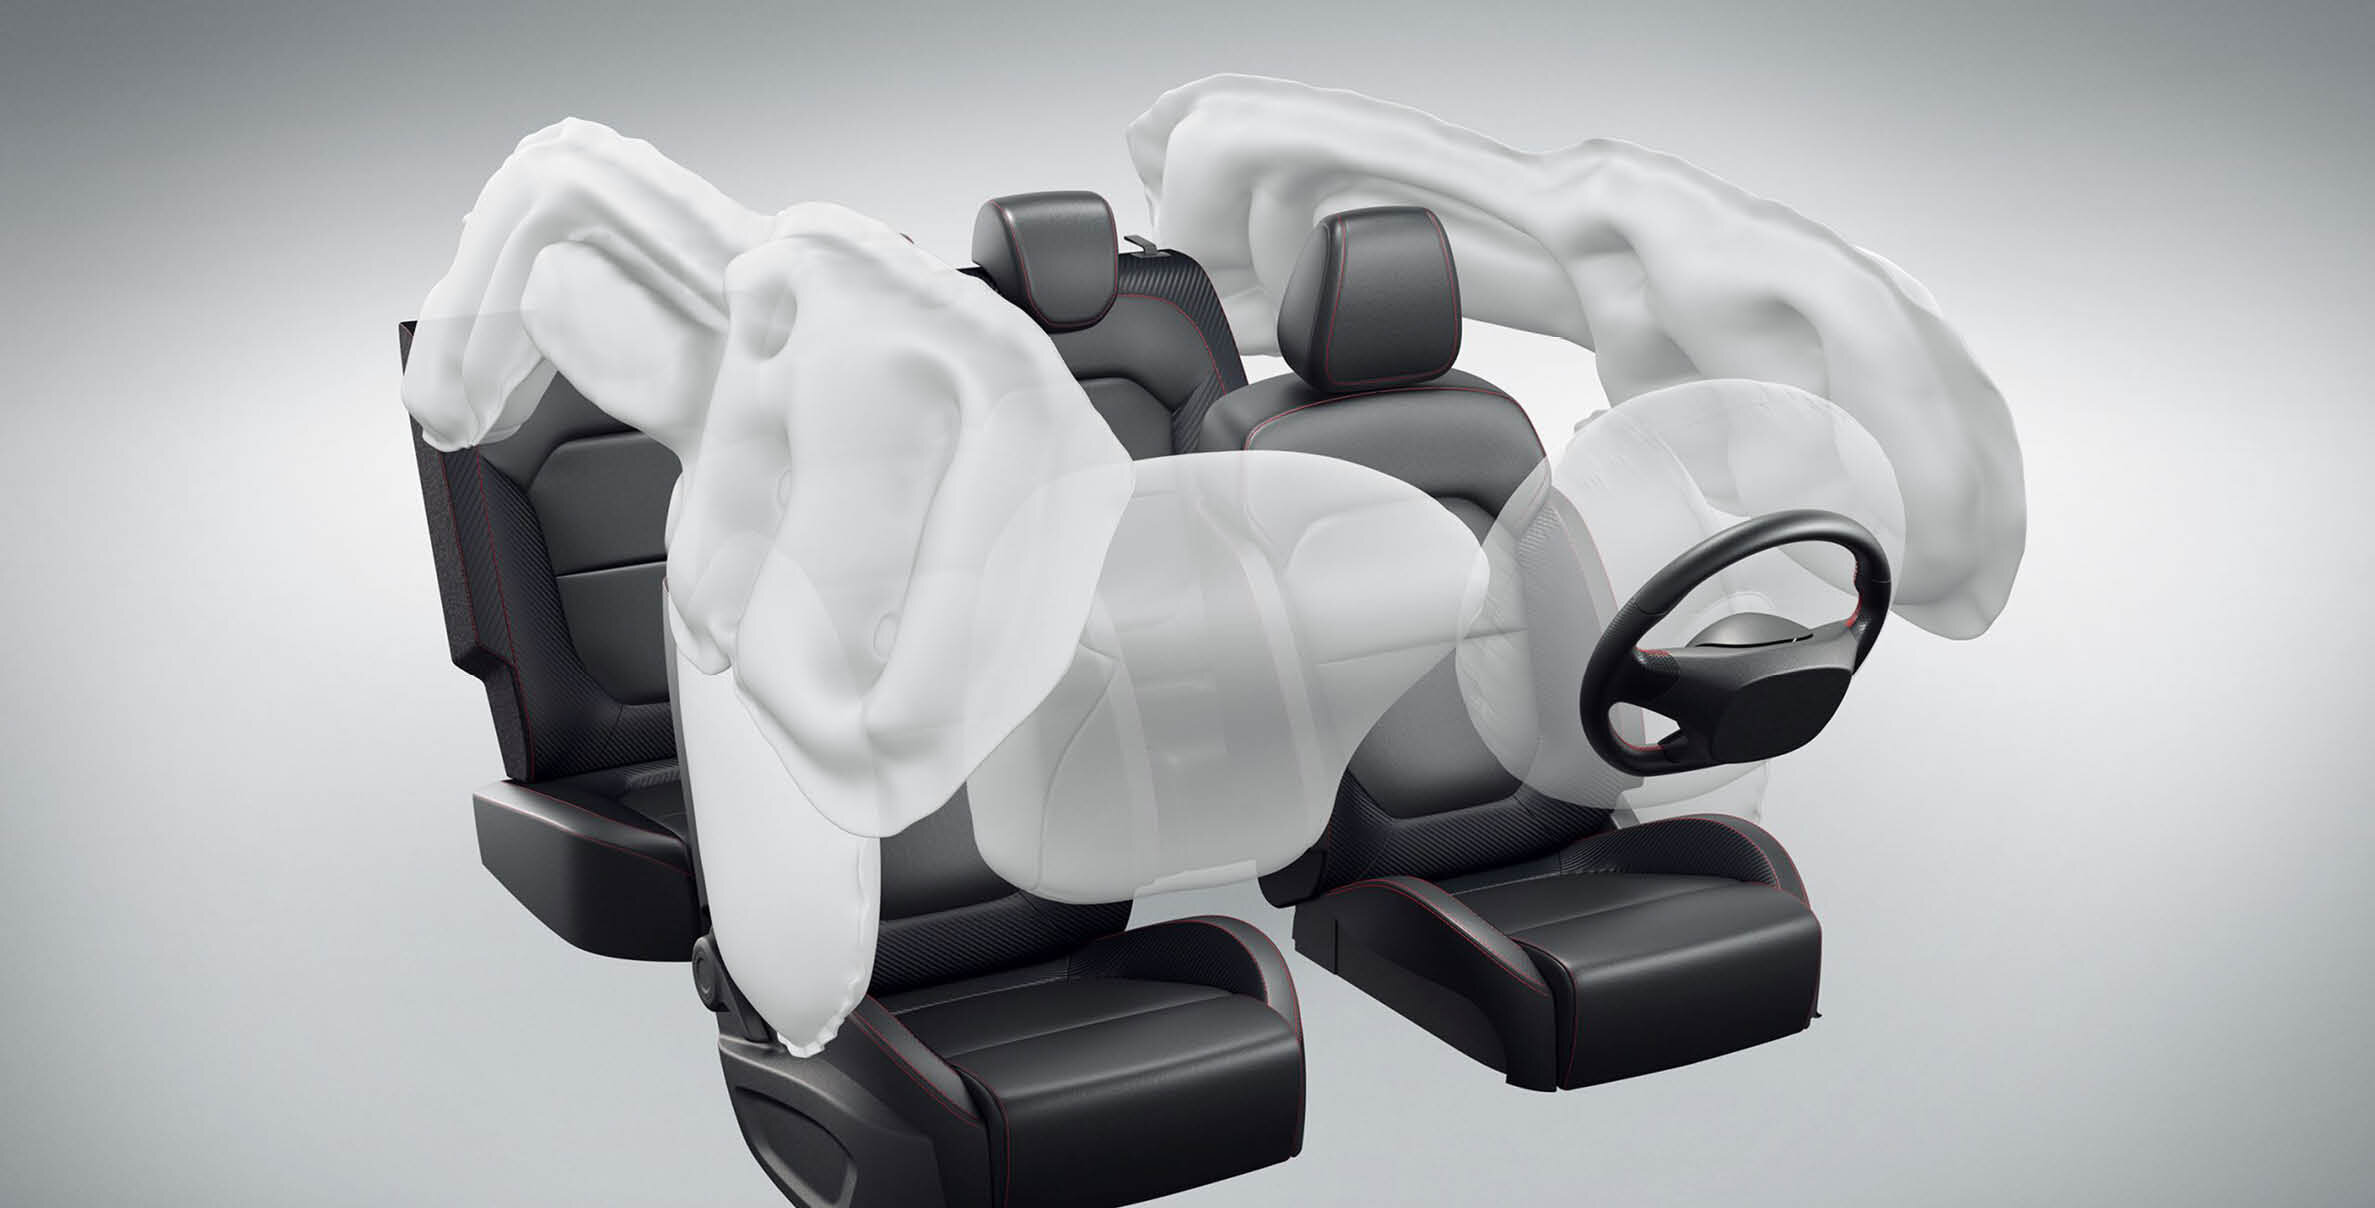 3D-Modell von Airbags im Auto